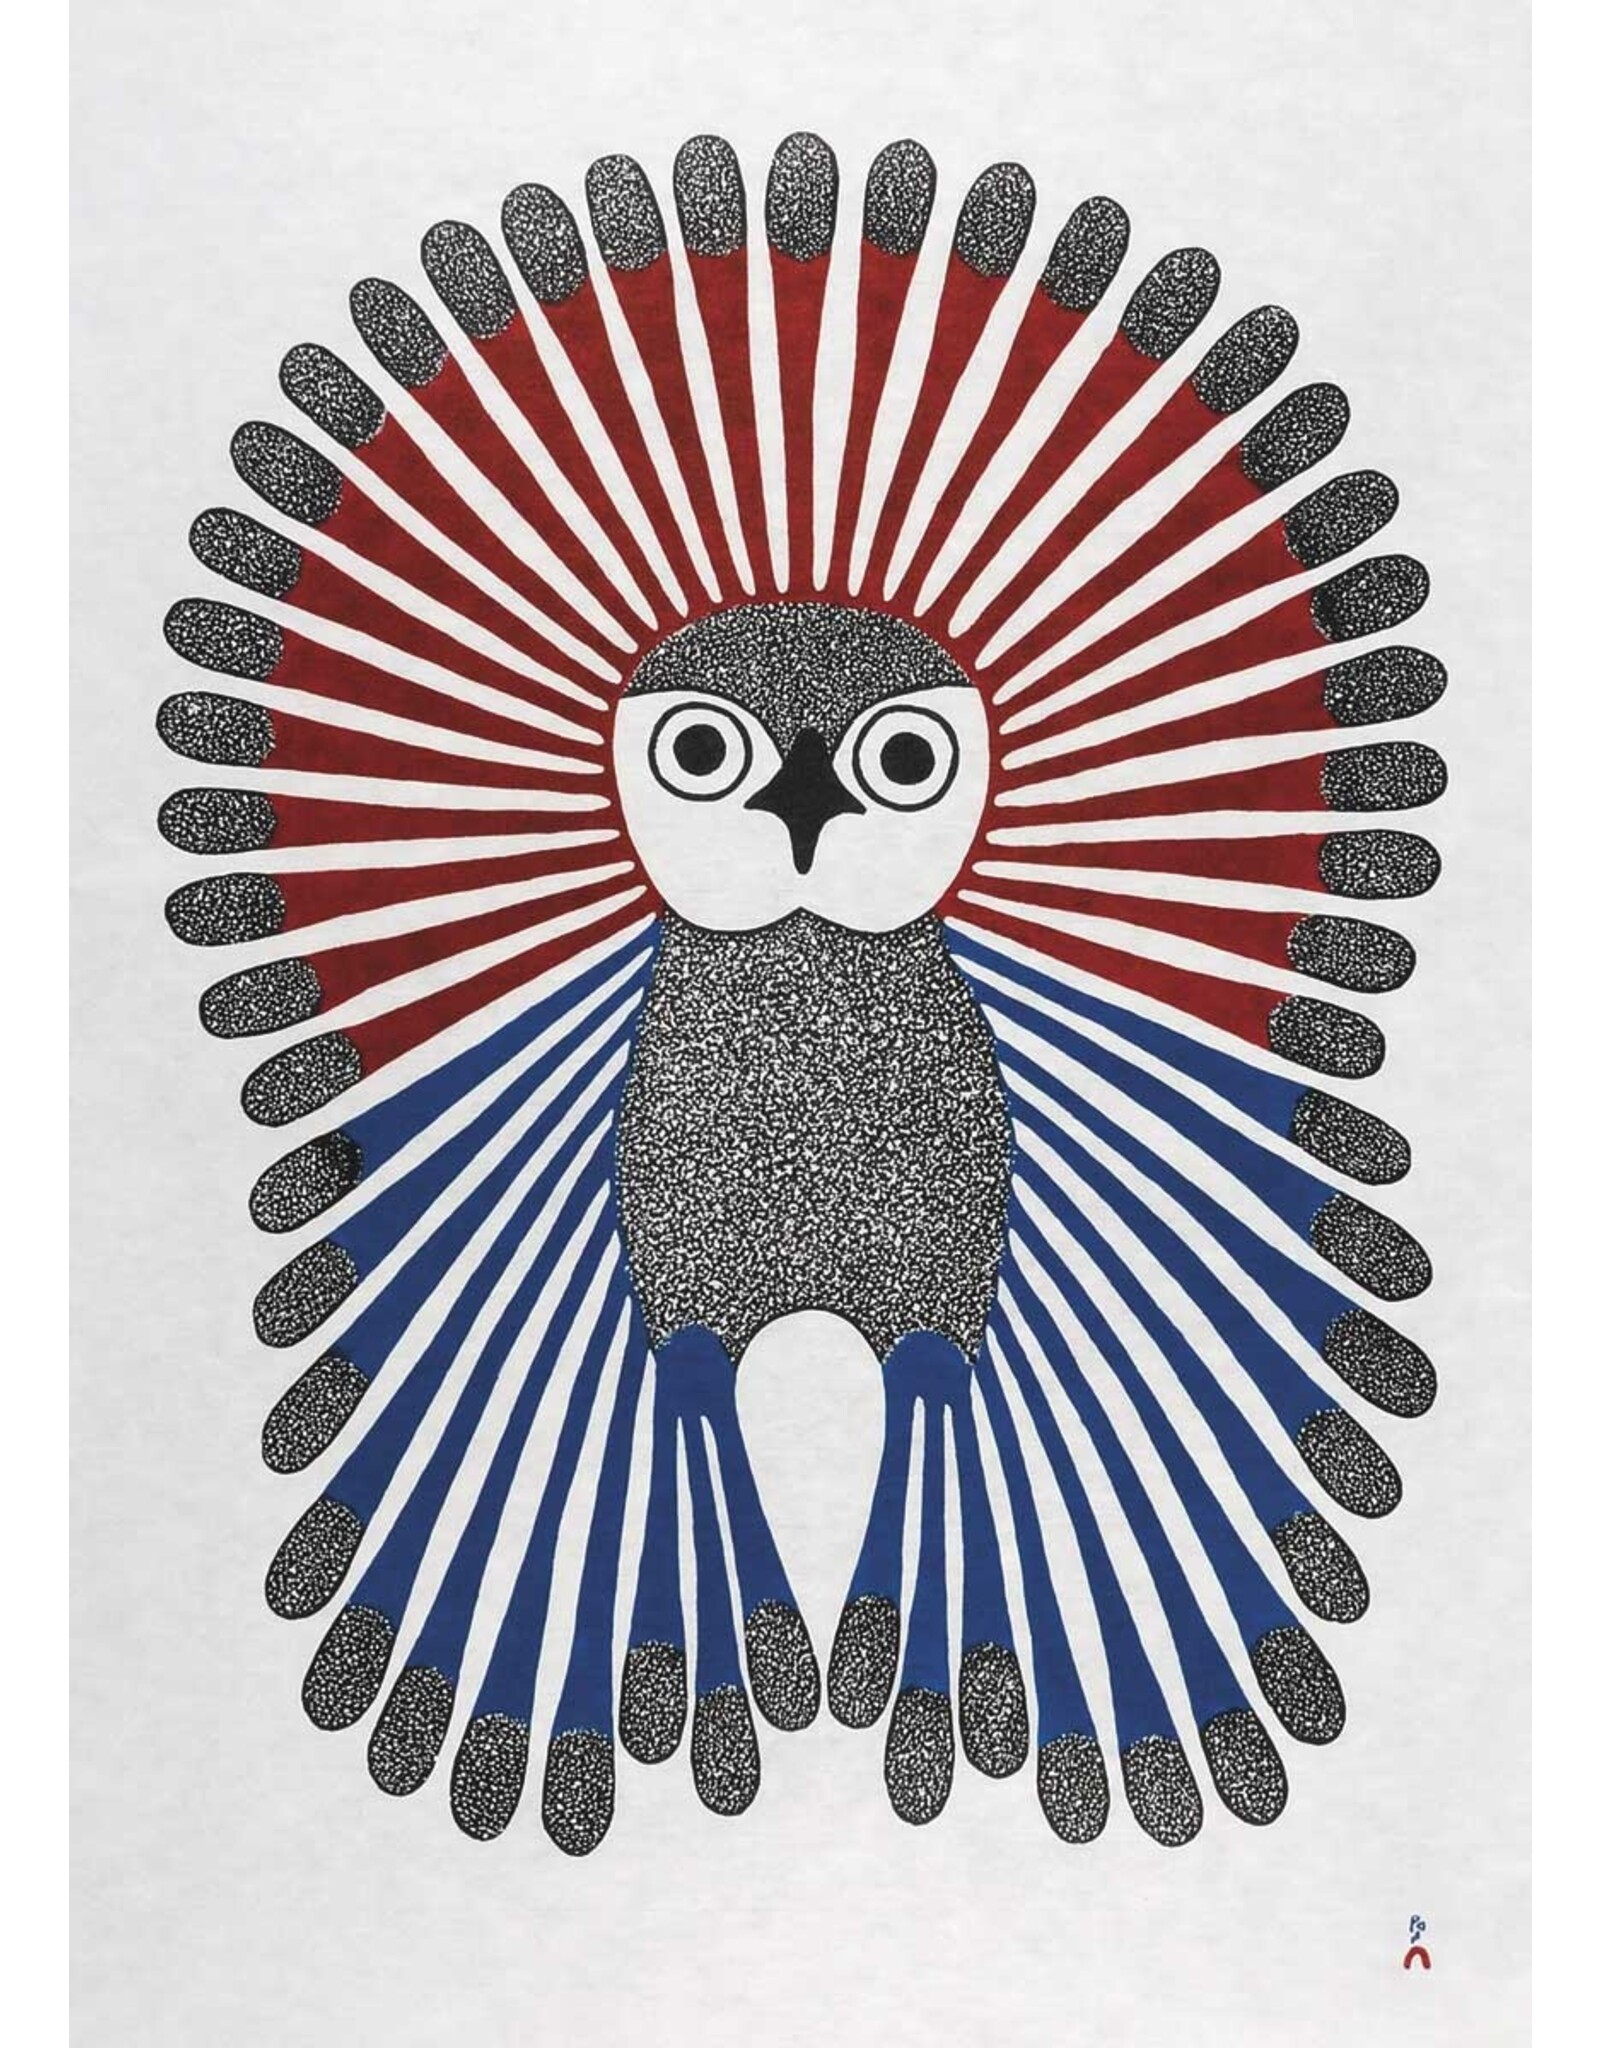 Vibrant Young Owl by Kenojuak Ashevak Framed